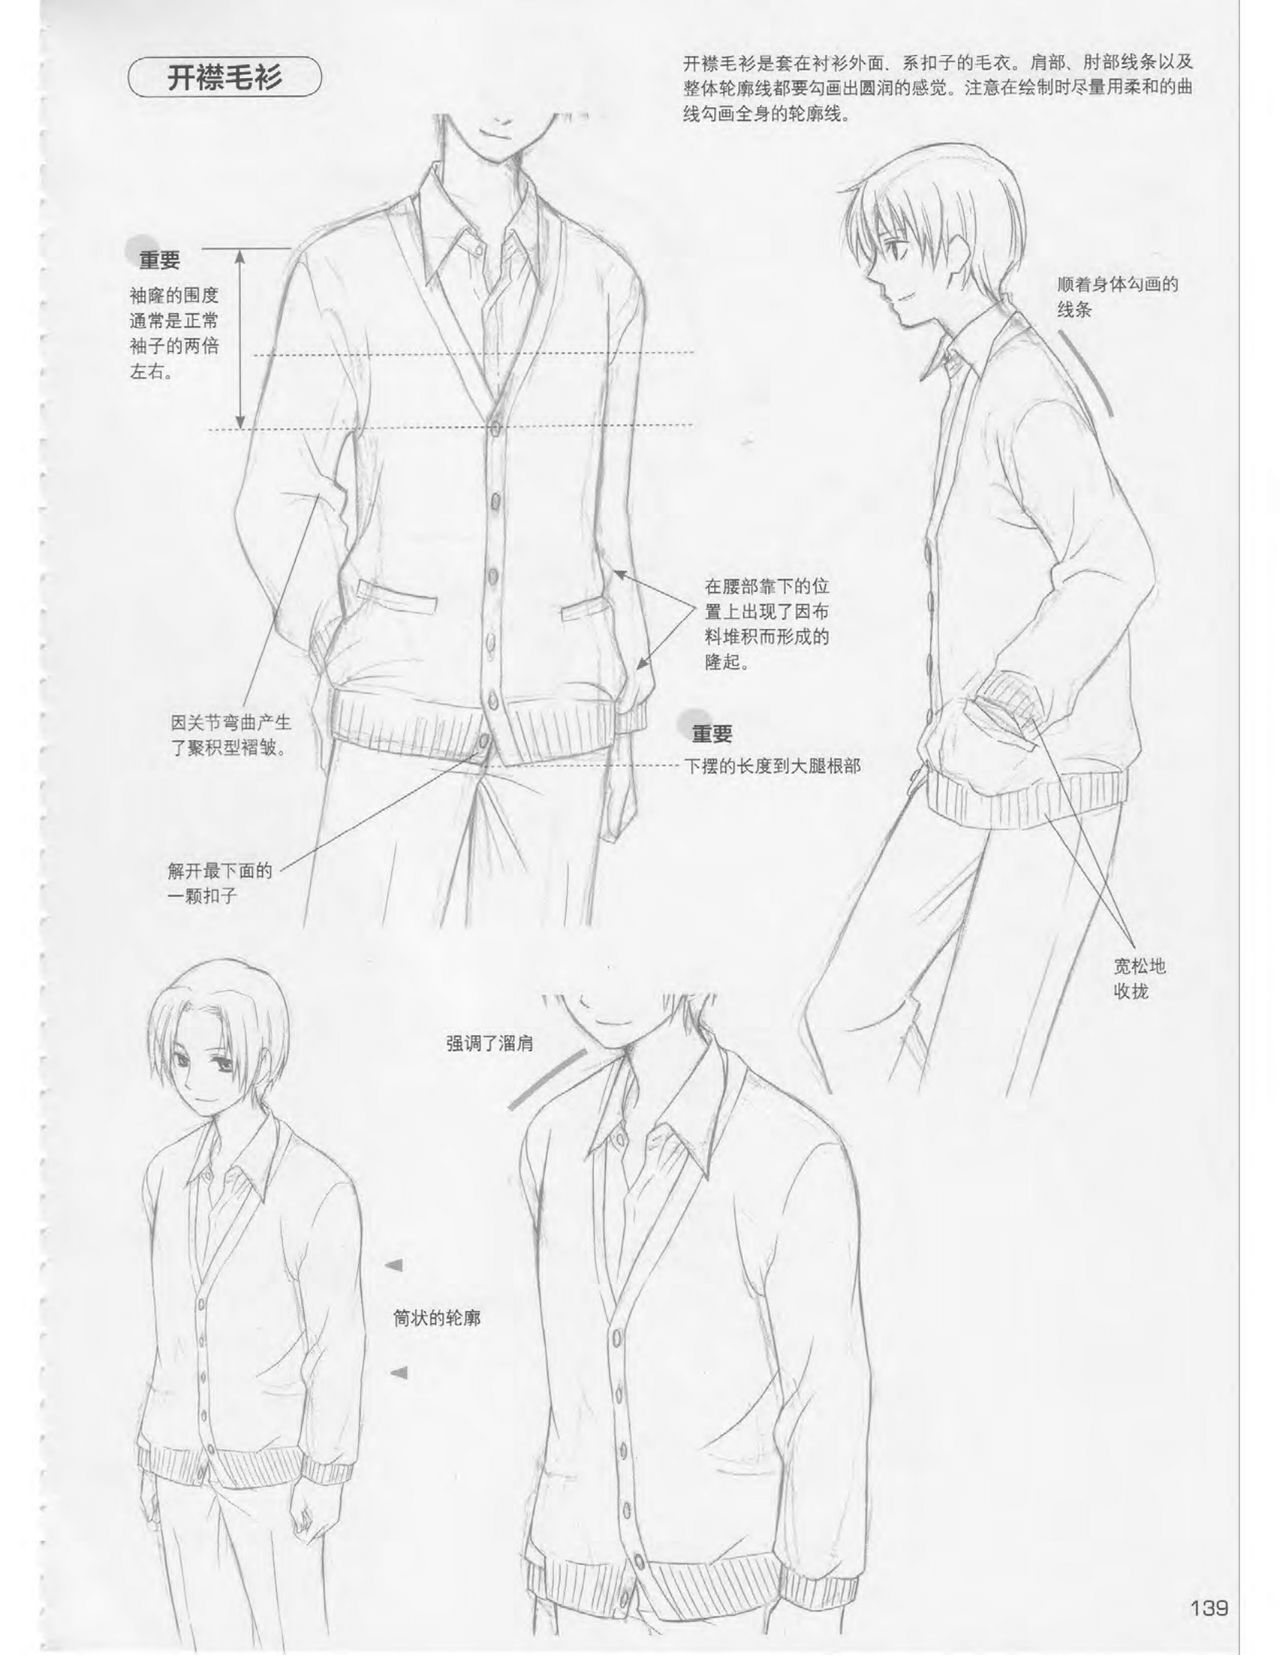 Japanese Manga Master Lecture 3: Lin Akira and Kakumaru Maru Talk About Glamorous Character Modeling 138